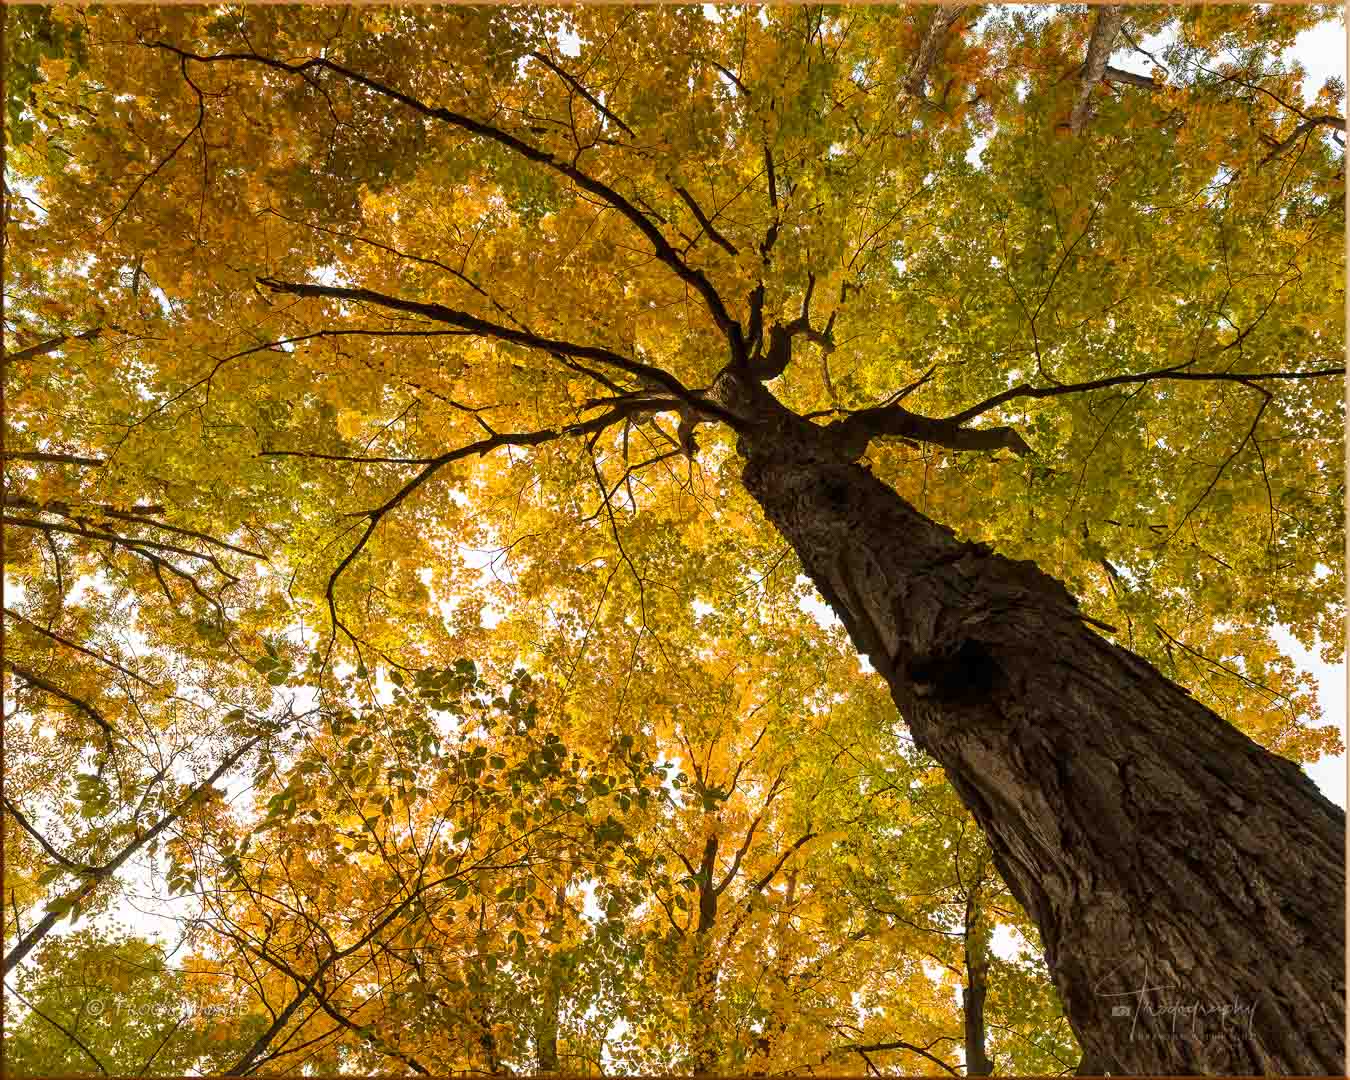 Sugar Maple in autumn splendor